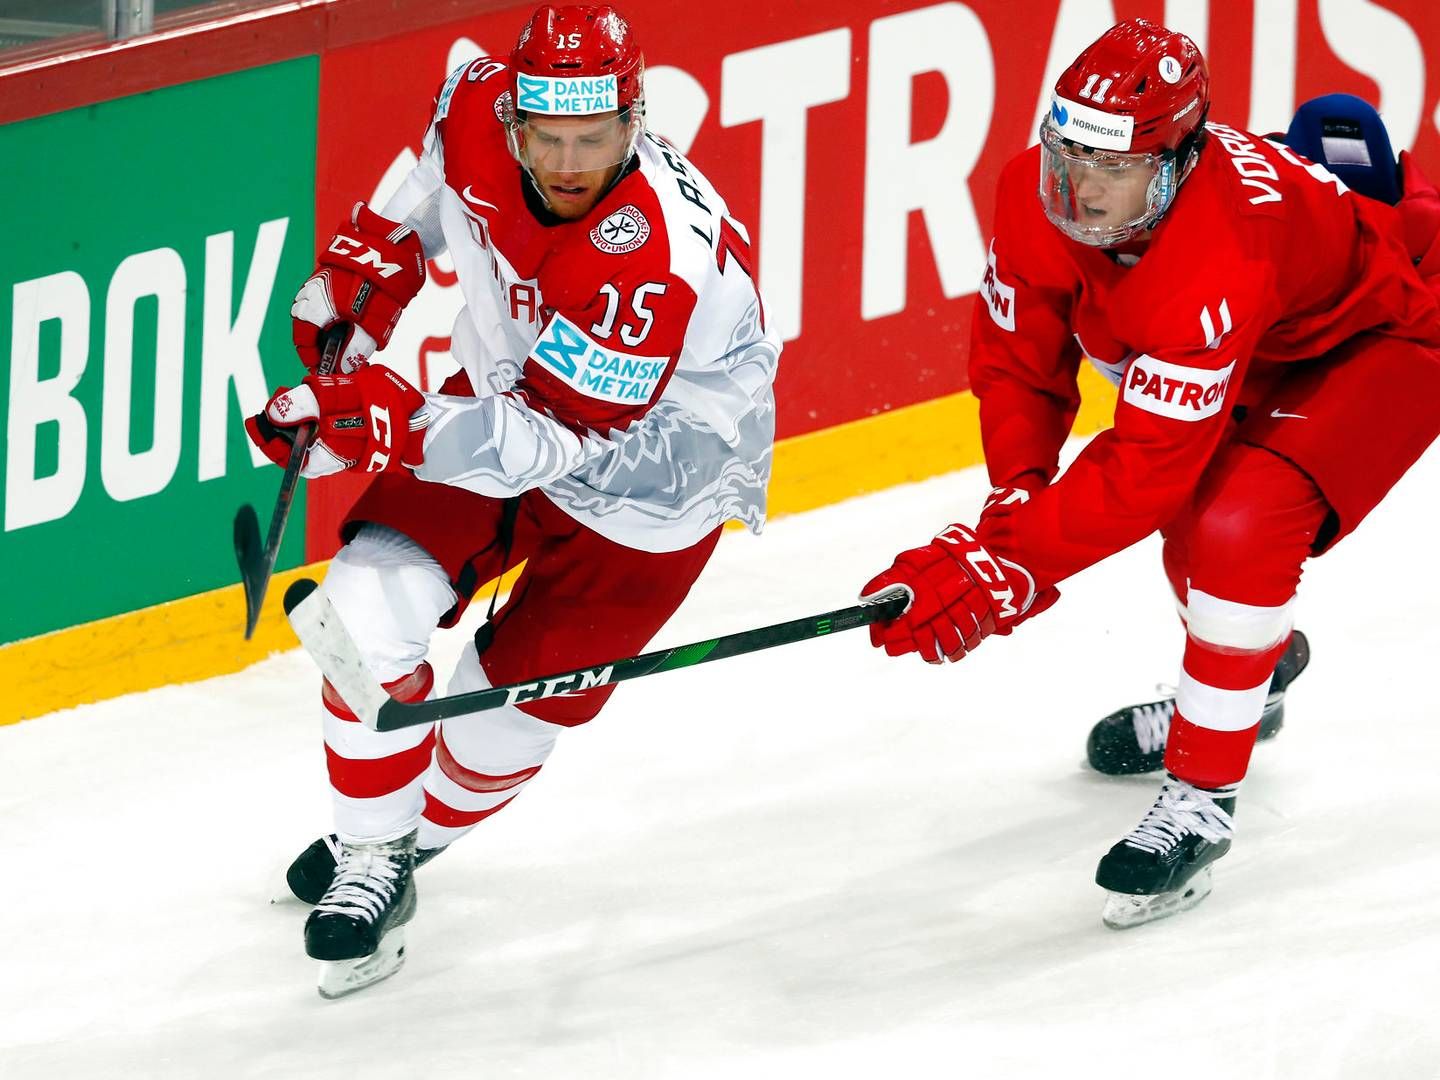 Står det til kulturministeren, vil en begivenhed som vinter-OL, hvor det mandlige danske ishockeylandshold mødte Rusland - officielt Den Russiske Olympiske Komite - ikke være mulig.